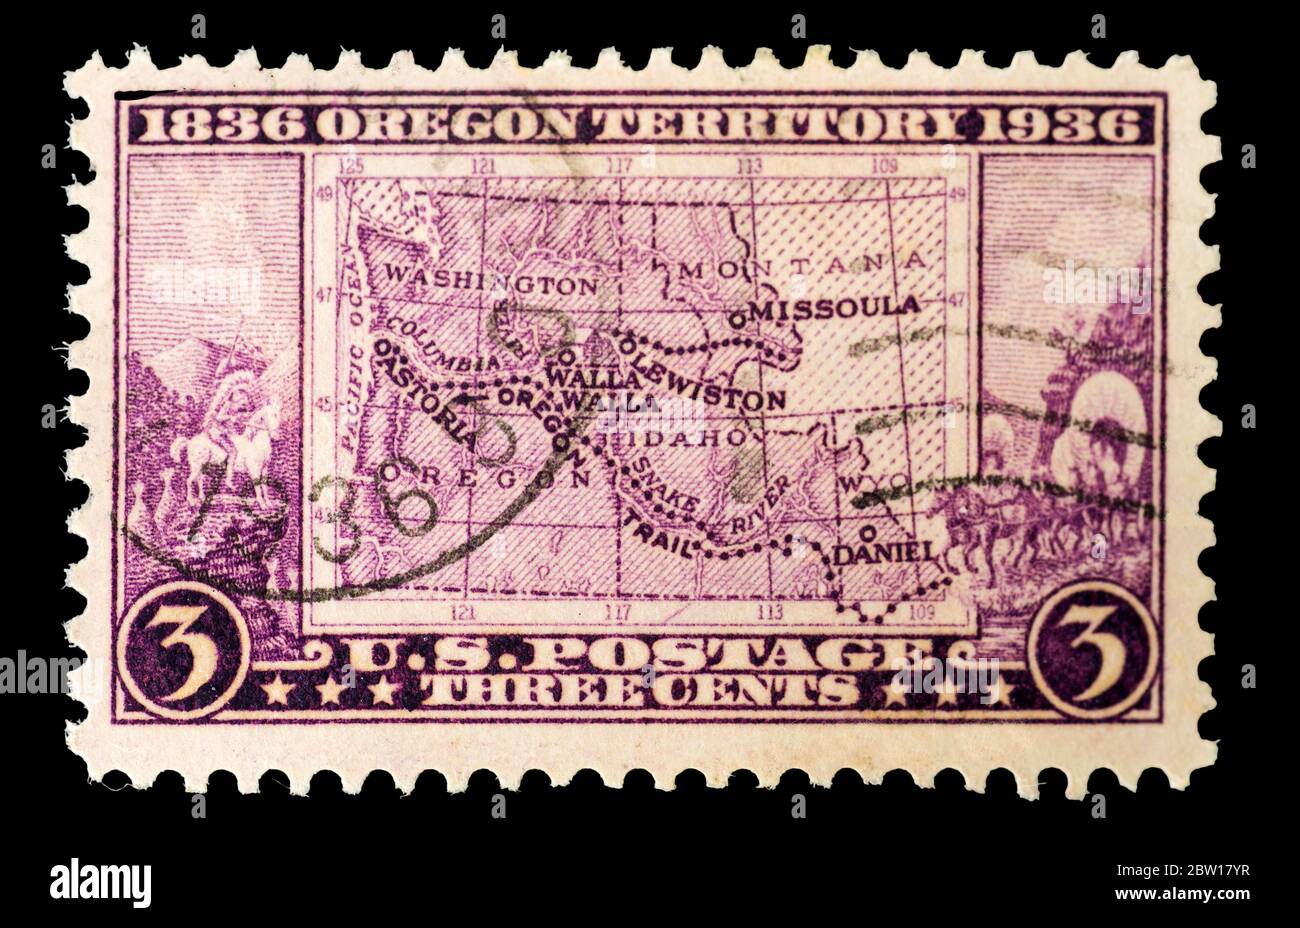 Un sello del postage de los Estados Unidos de 1936 que conmemora el Centenario del Territorio de Oregon. Foto de stock